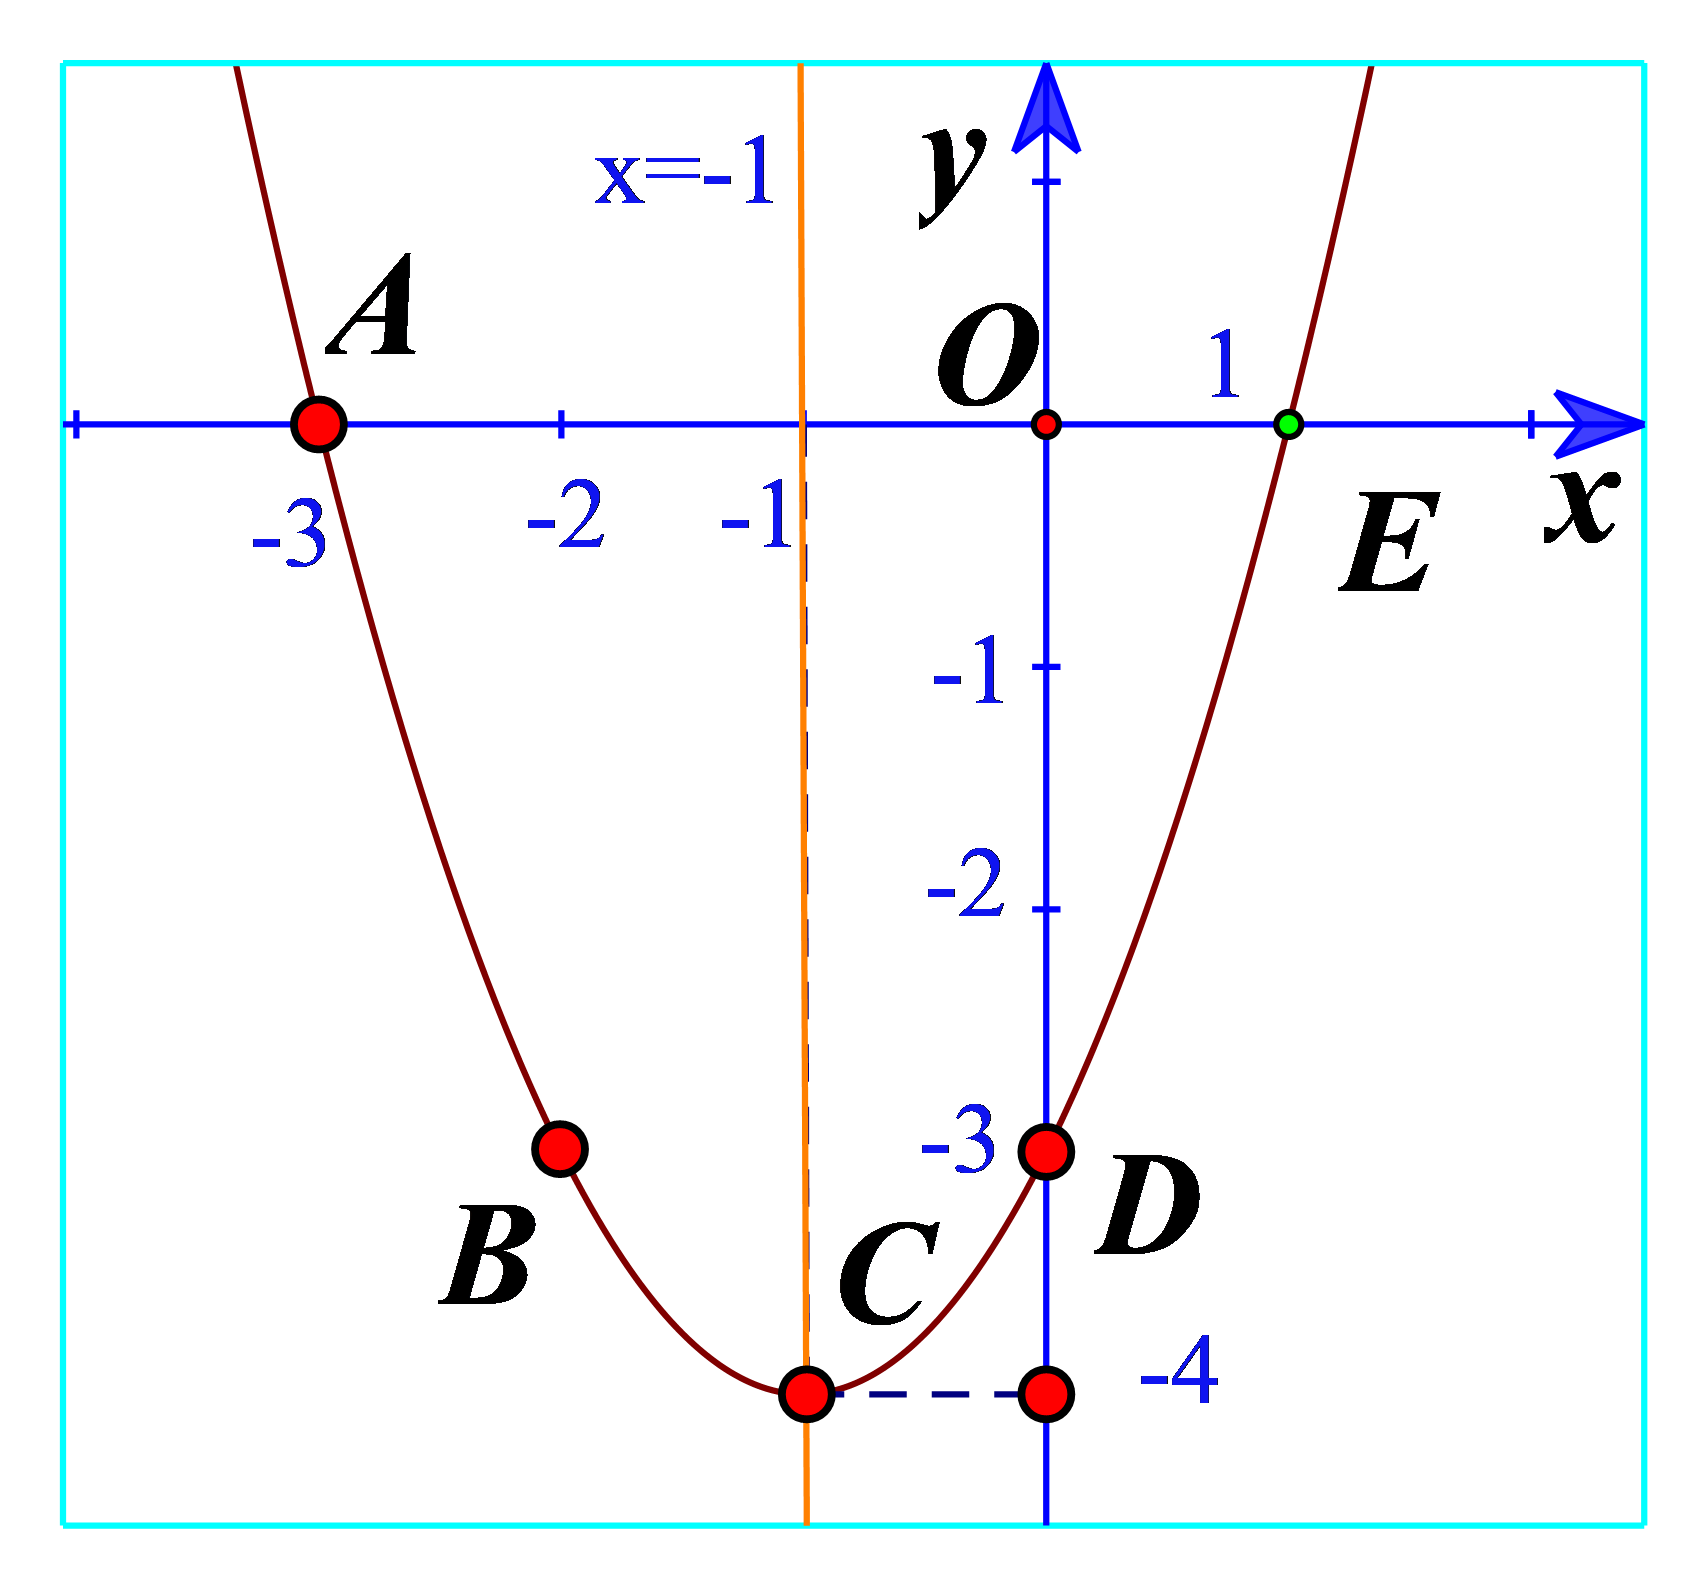 Tìm giá trị y tương ứng và vẽ parabol y=x^2-2x-3: Để hiểu rõ hơn về giá trị y tương ứng với mỗi giá trị x, chúng ta sẽ cùng nhau vẽ đường Parabol y=x^2-2x-